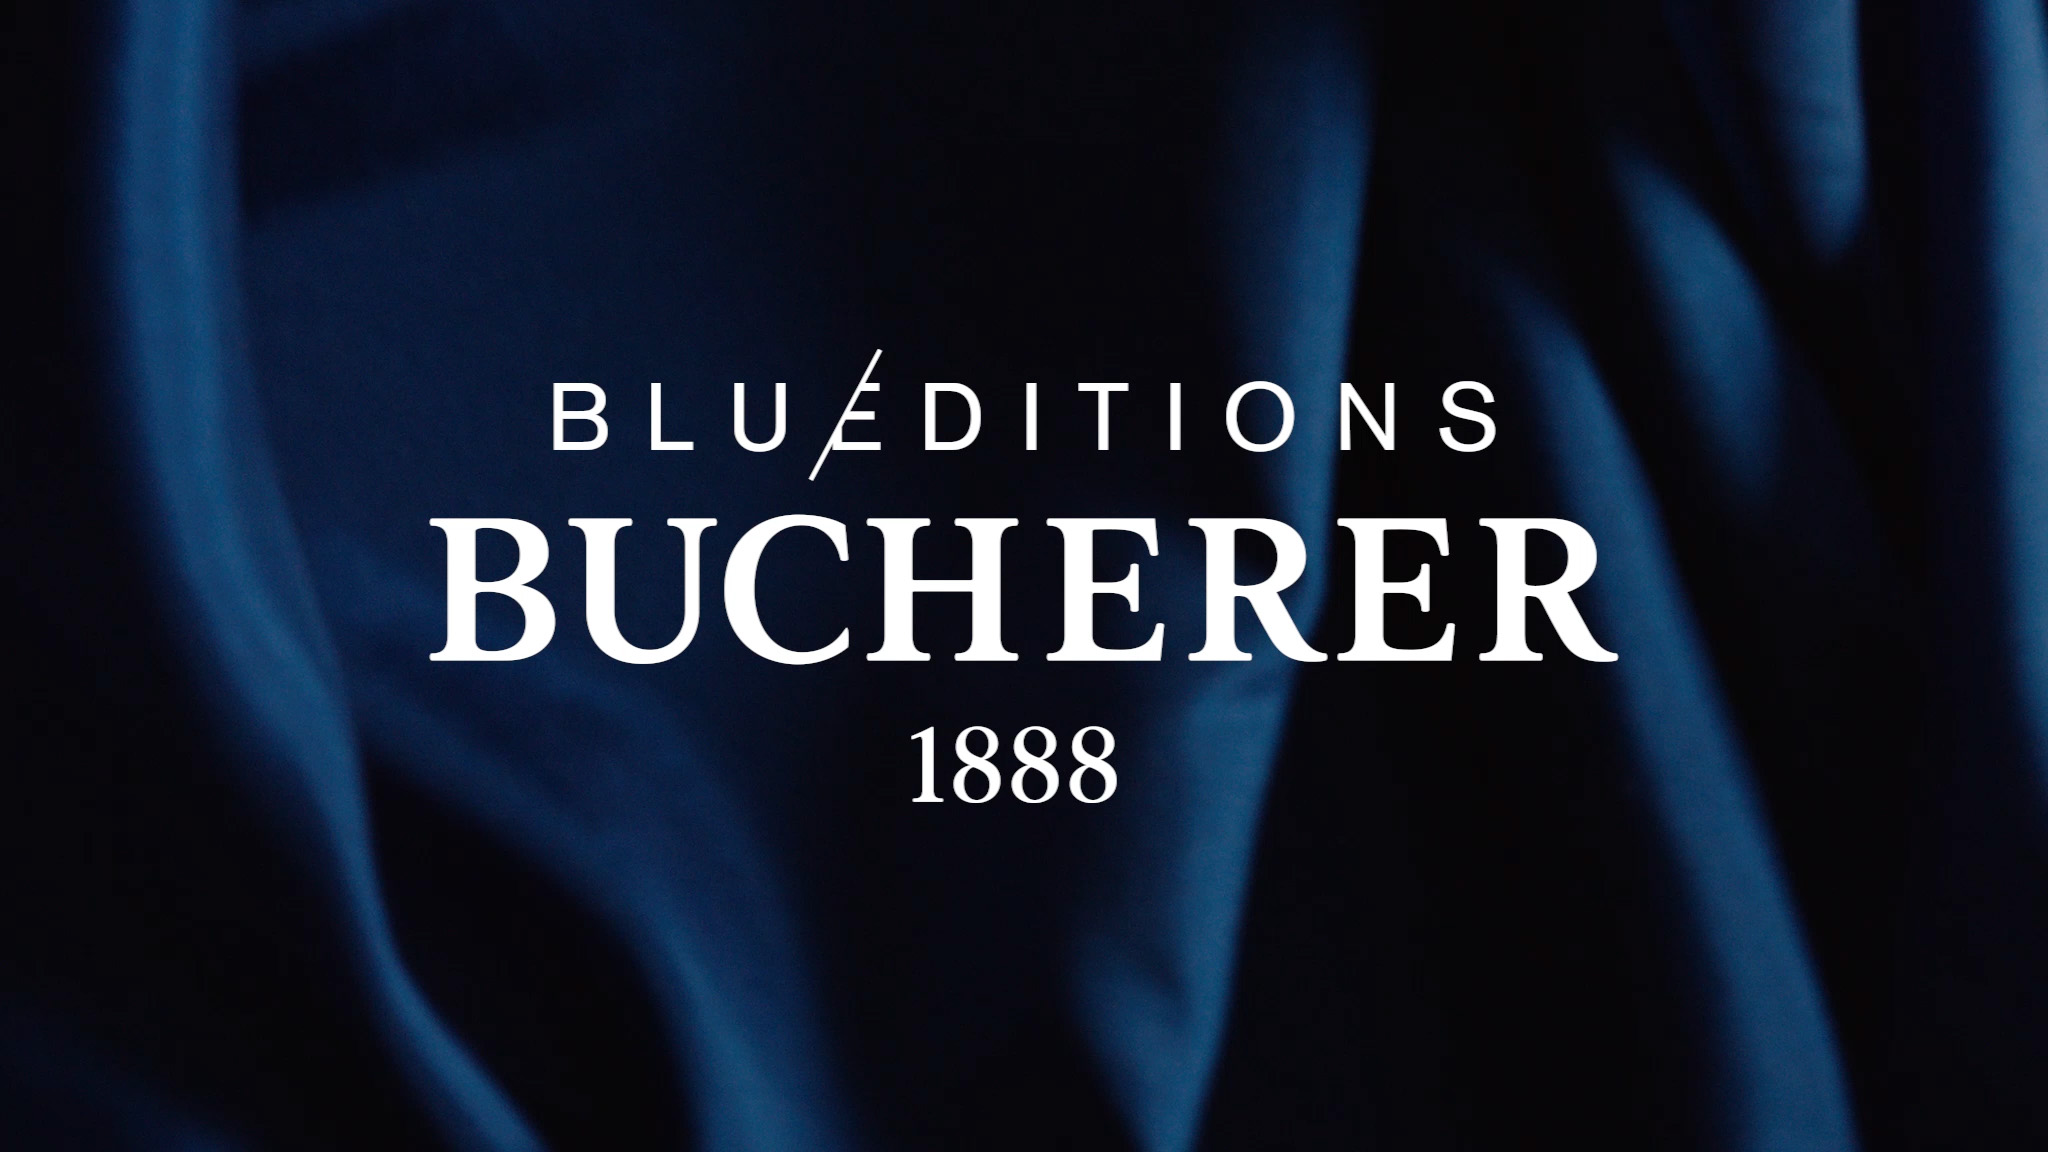 Bucherer blue editions